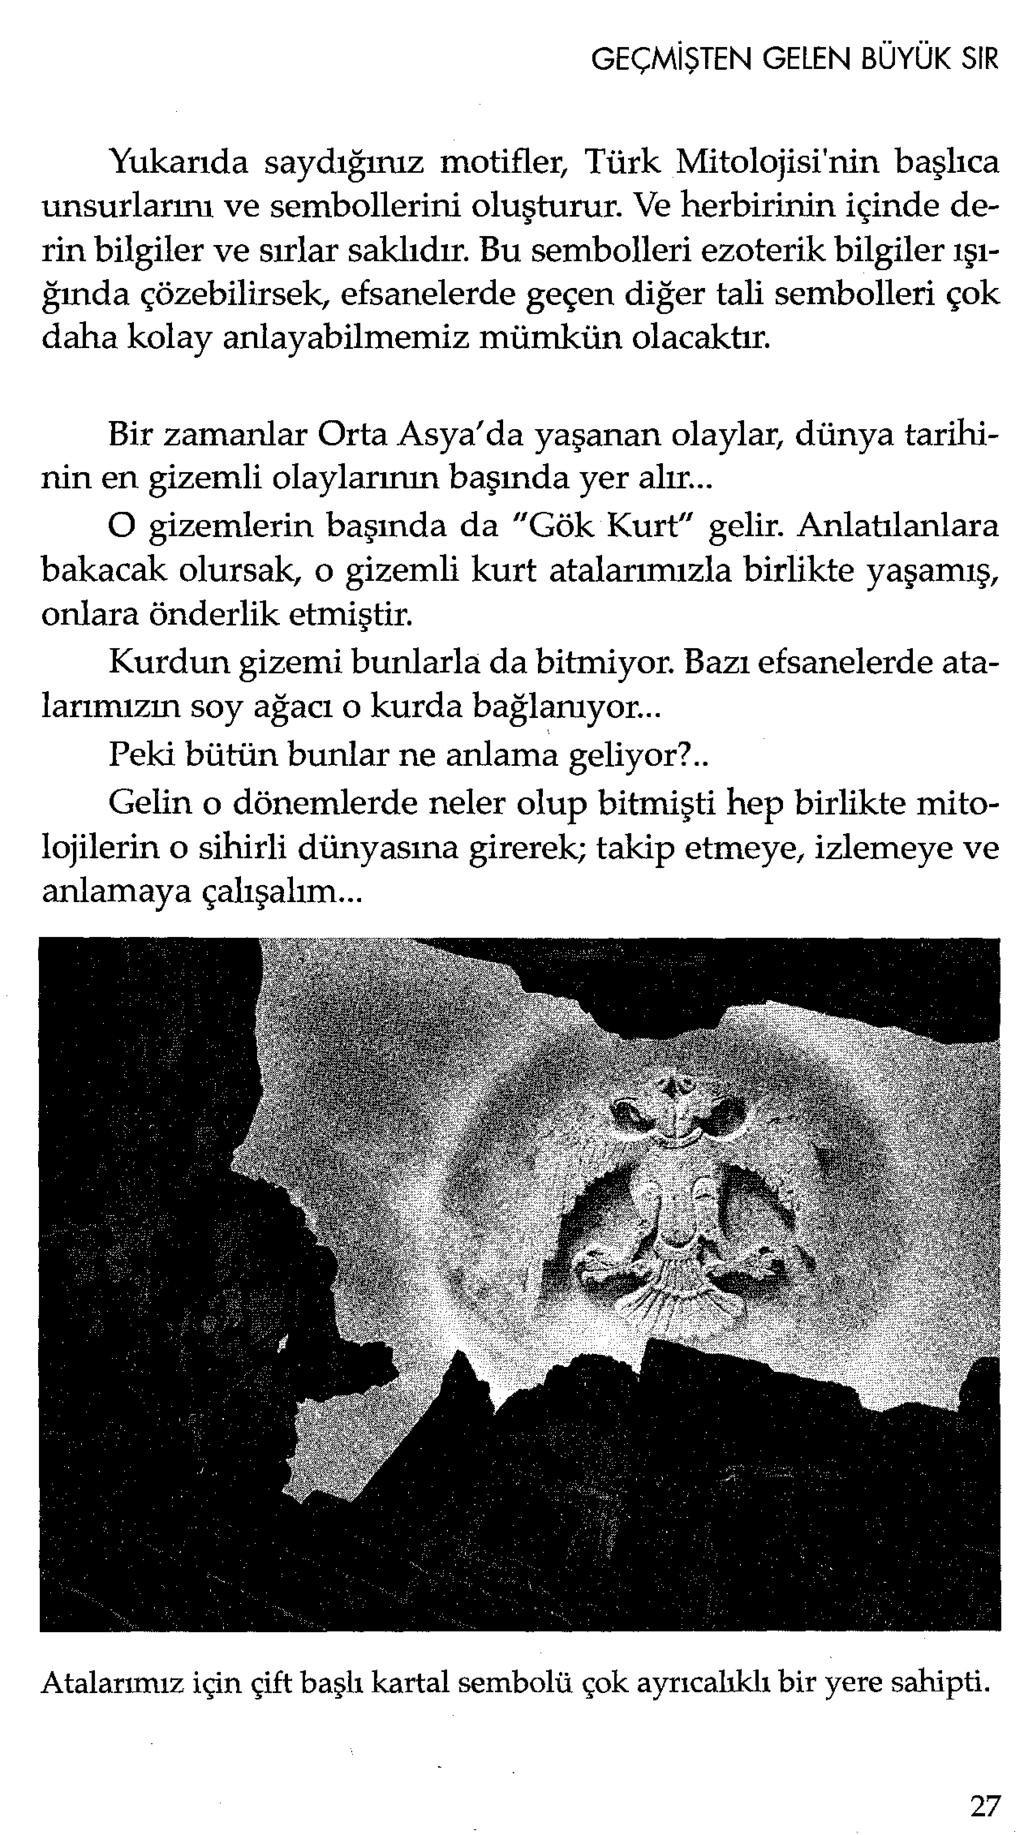 Yukarıda saydığınız motifler, Türk Mitolojisi'nin başlıca unsurlarını ve sembollerini oluşturur. Ve herbirinin içinde derin bilgiler ve sırlar saklıdır.